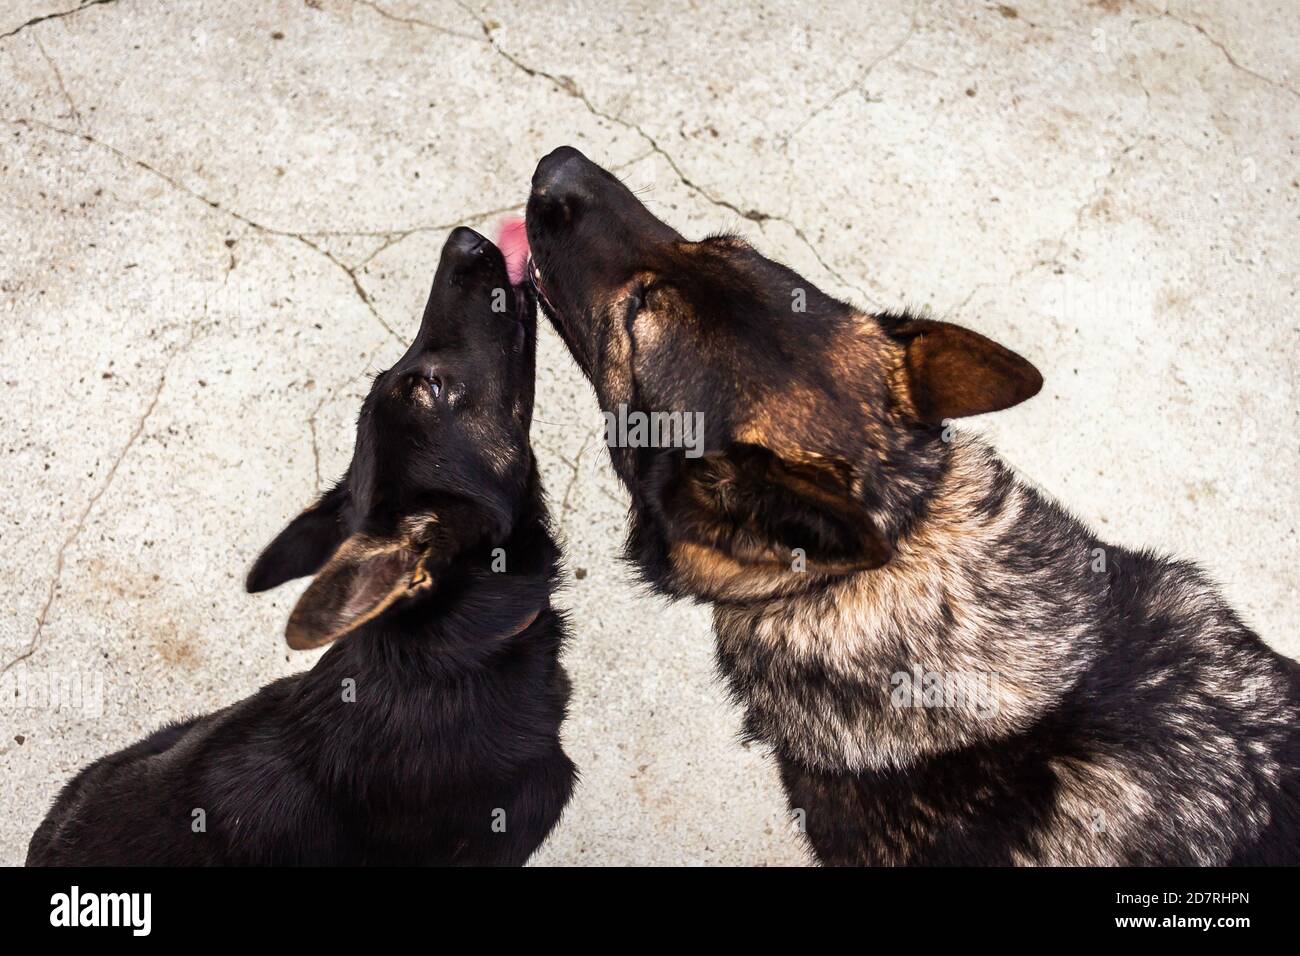 Les chiens mignons se léchant les uns les autres - le concept de l'amour Banque D'Images